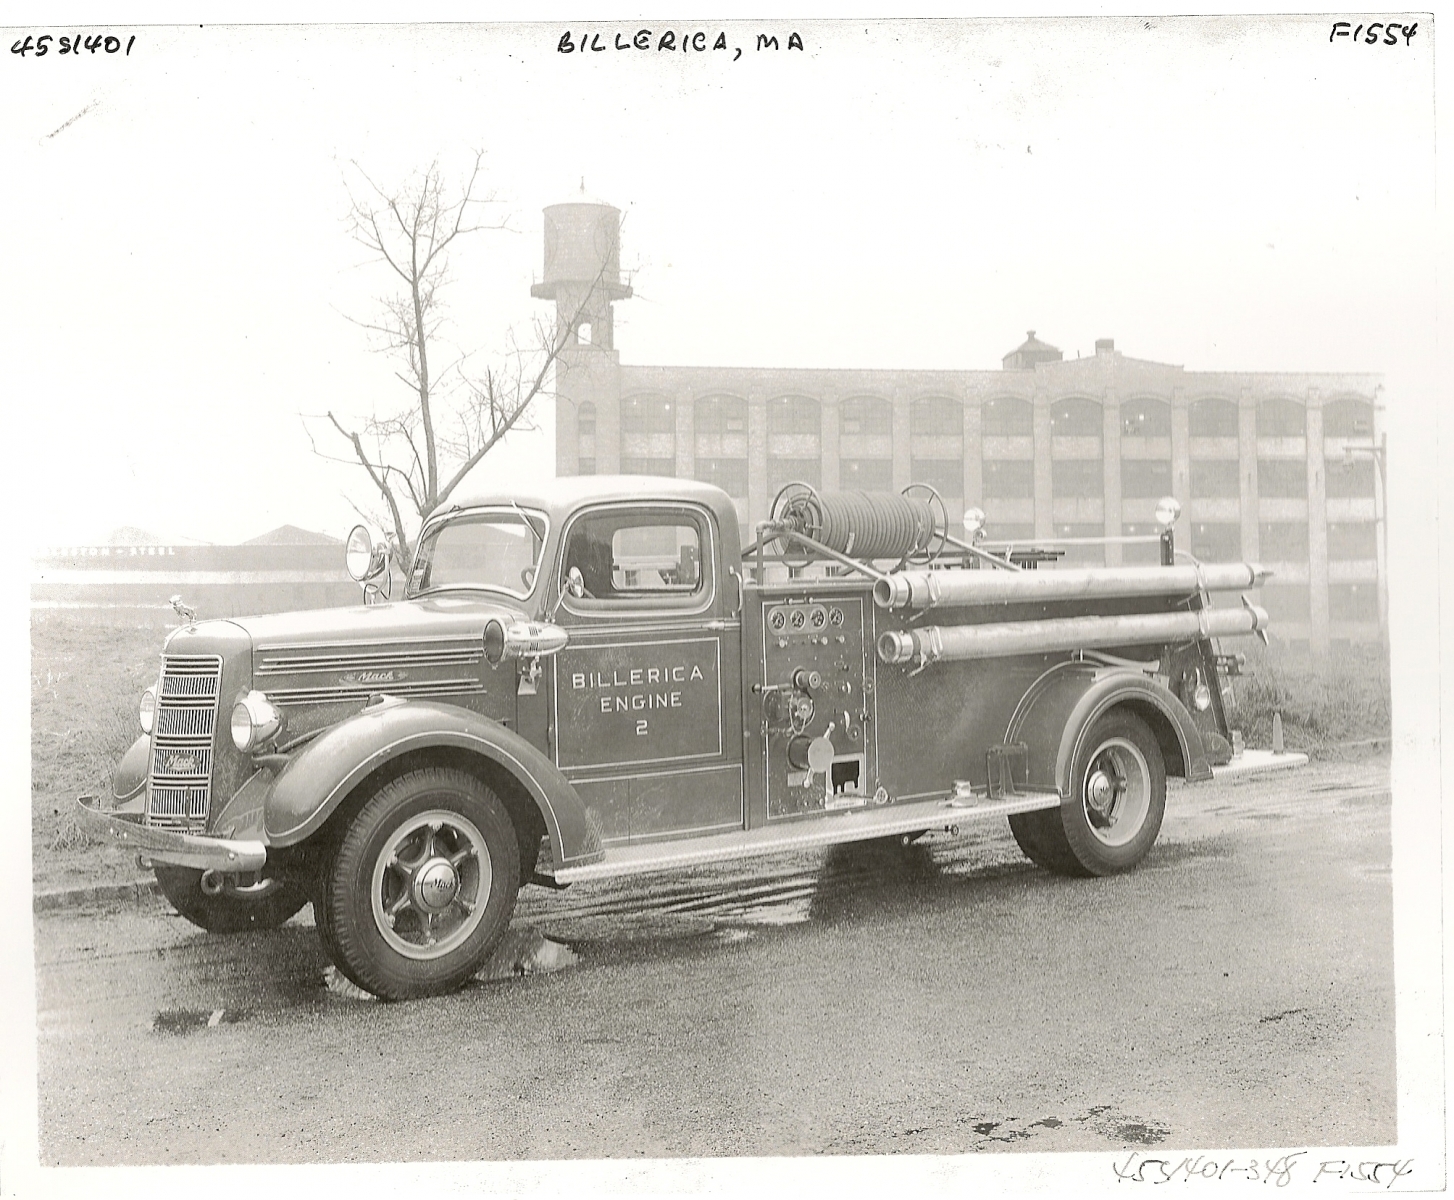 Ready for service - March 1948 @ Mack's L.I.City, NY Production Facility